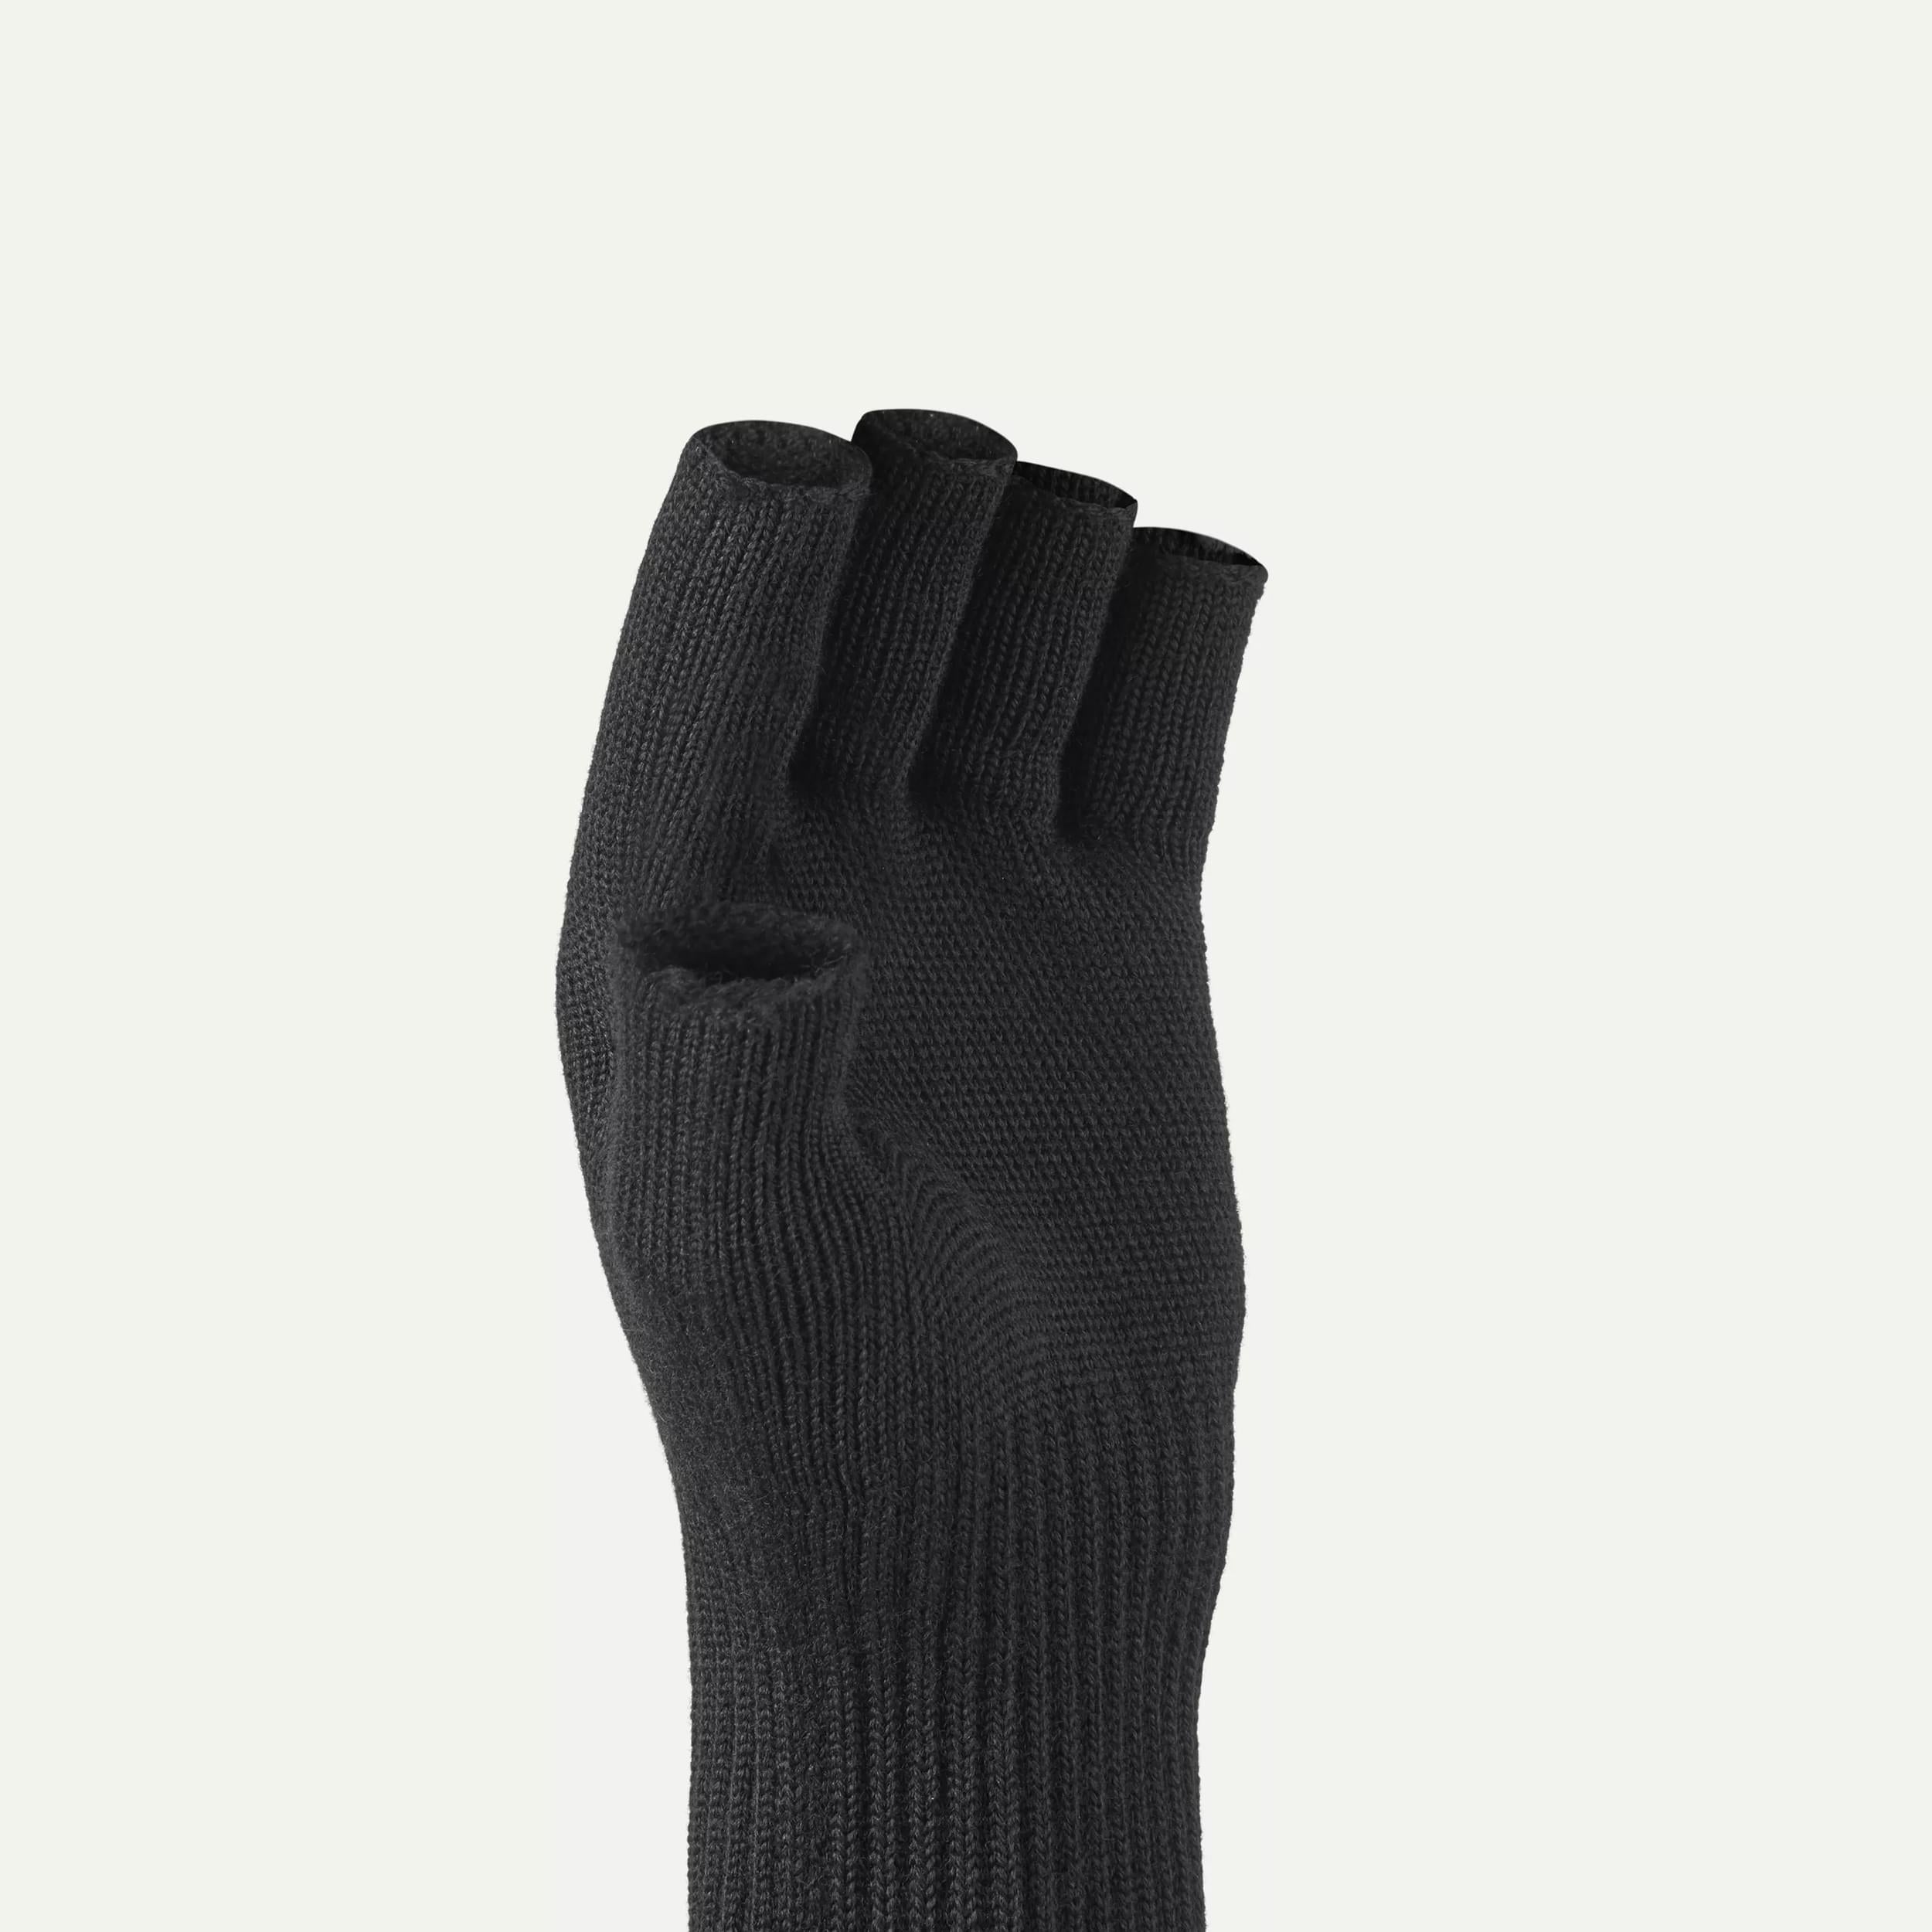  SEALSKINZ Unisex Merino Fingerless Glove Liner, Black